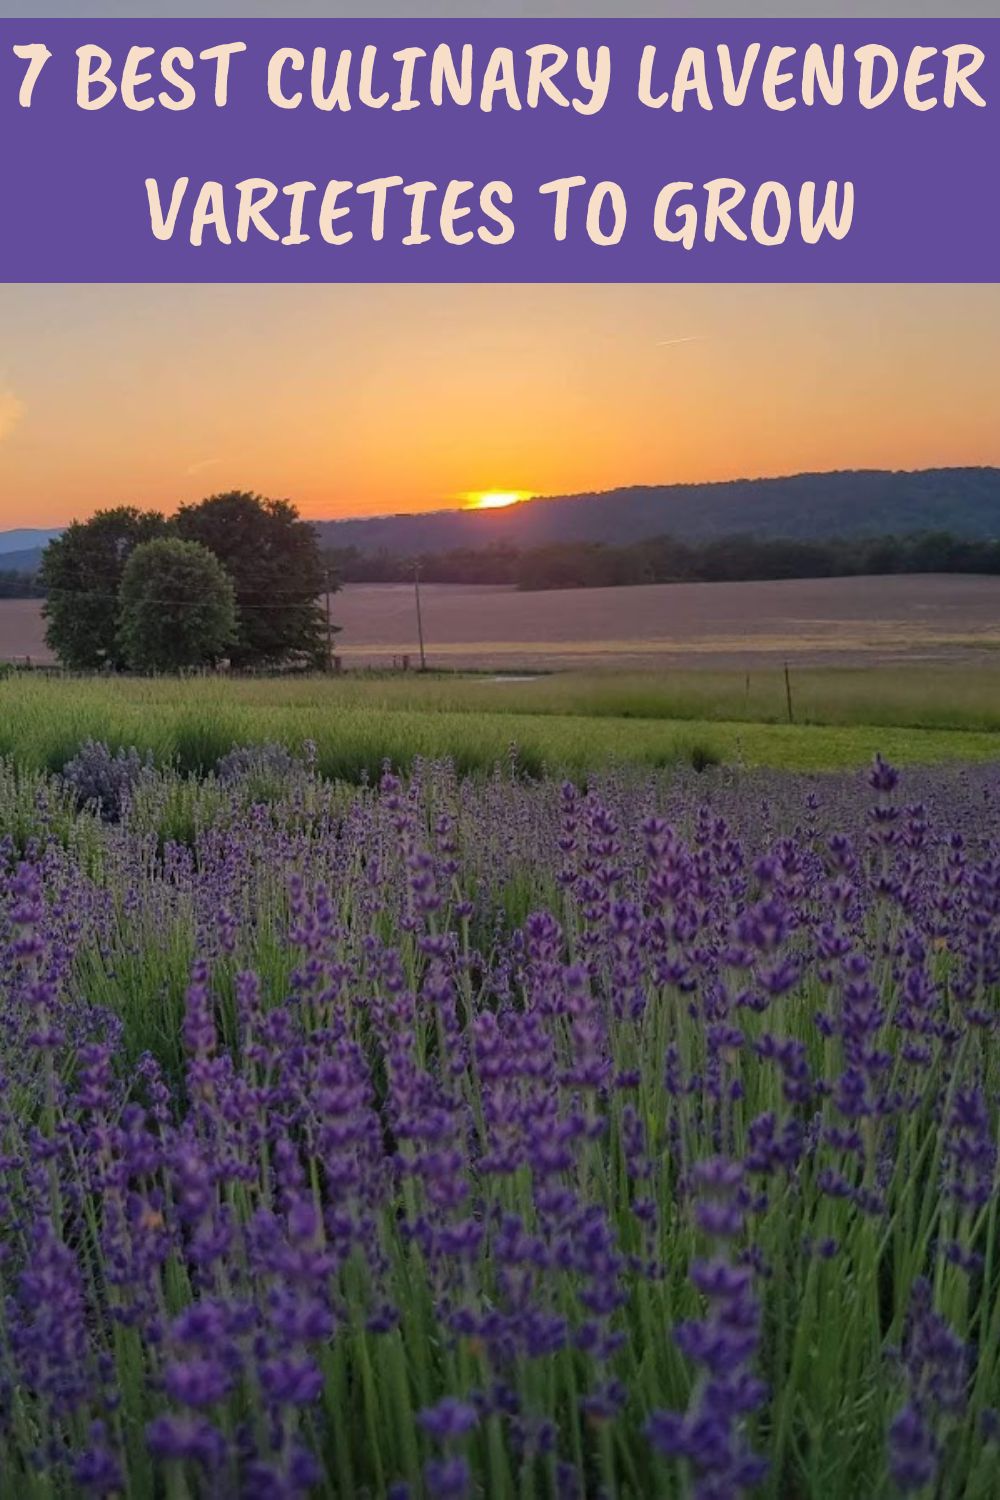 7 best culinary lavender varieties to grow.